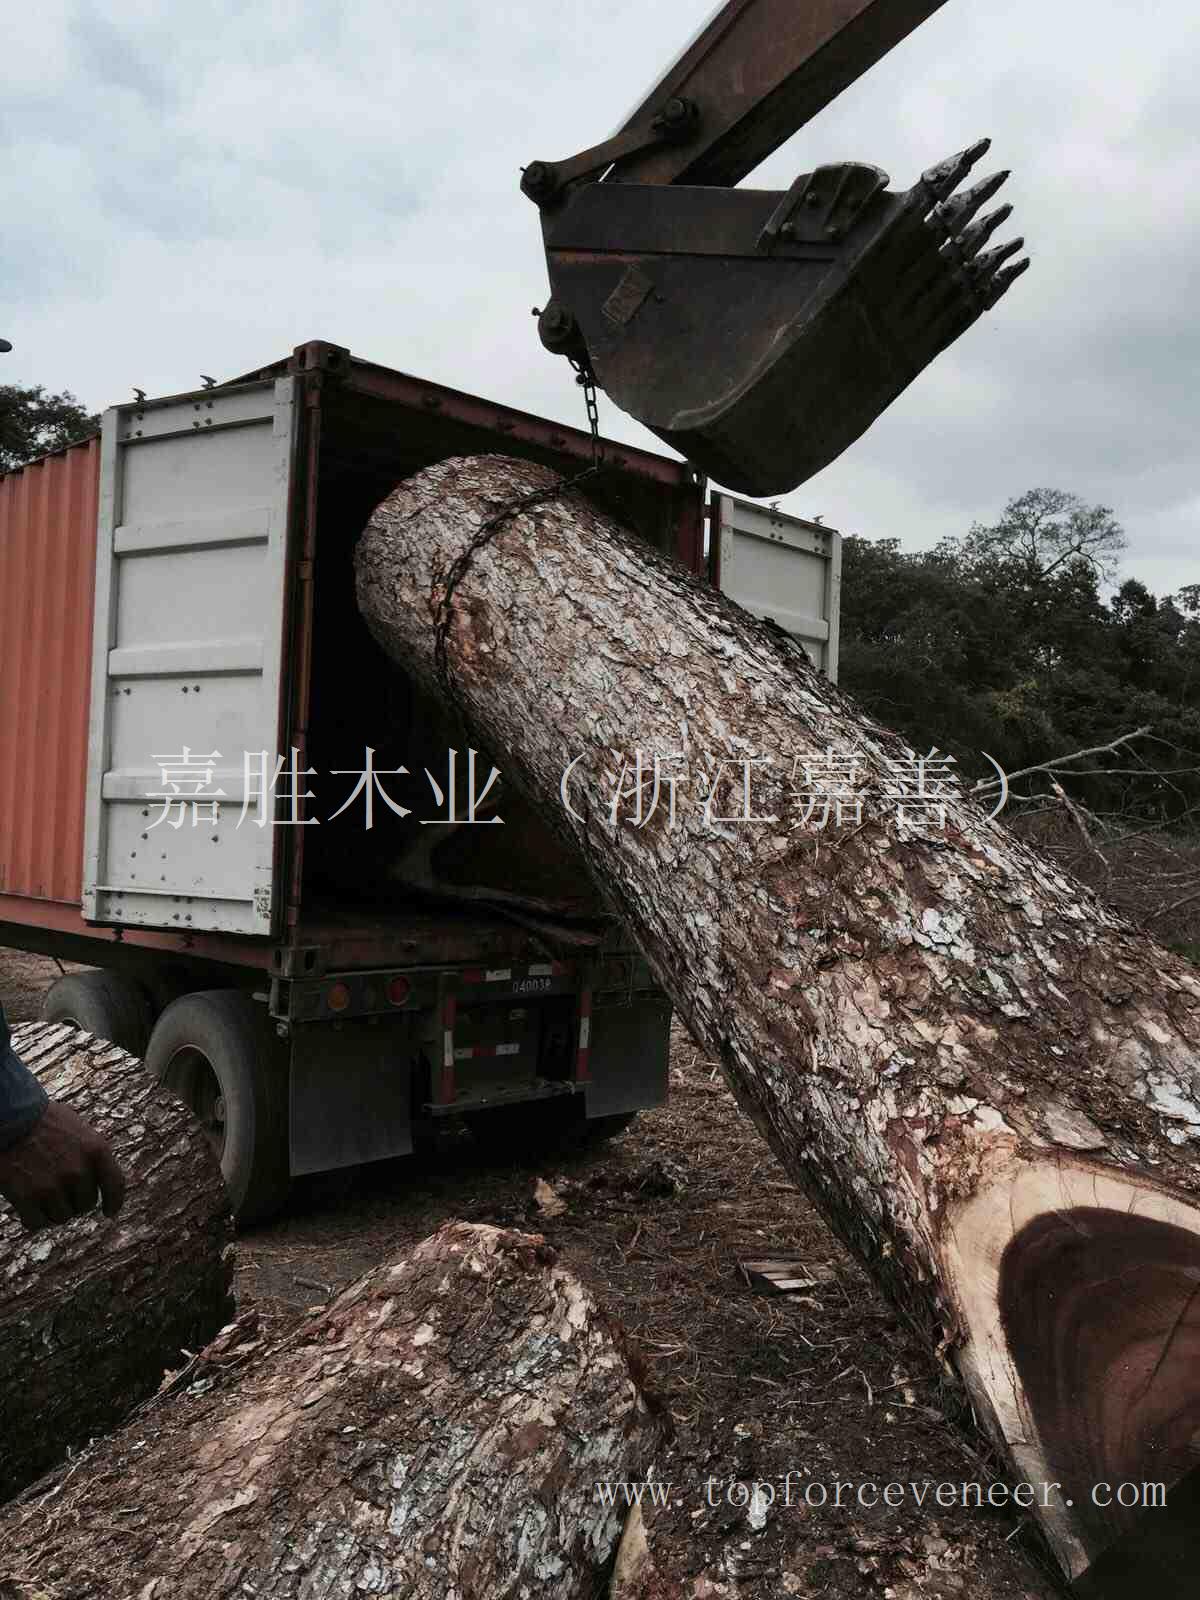 南美大胡桃大器家具用原木 (南美琥珀木) South American Walnut Huge Trees Table Top and Solid Wood Furn